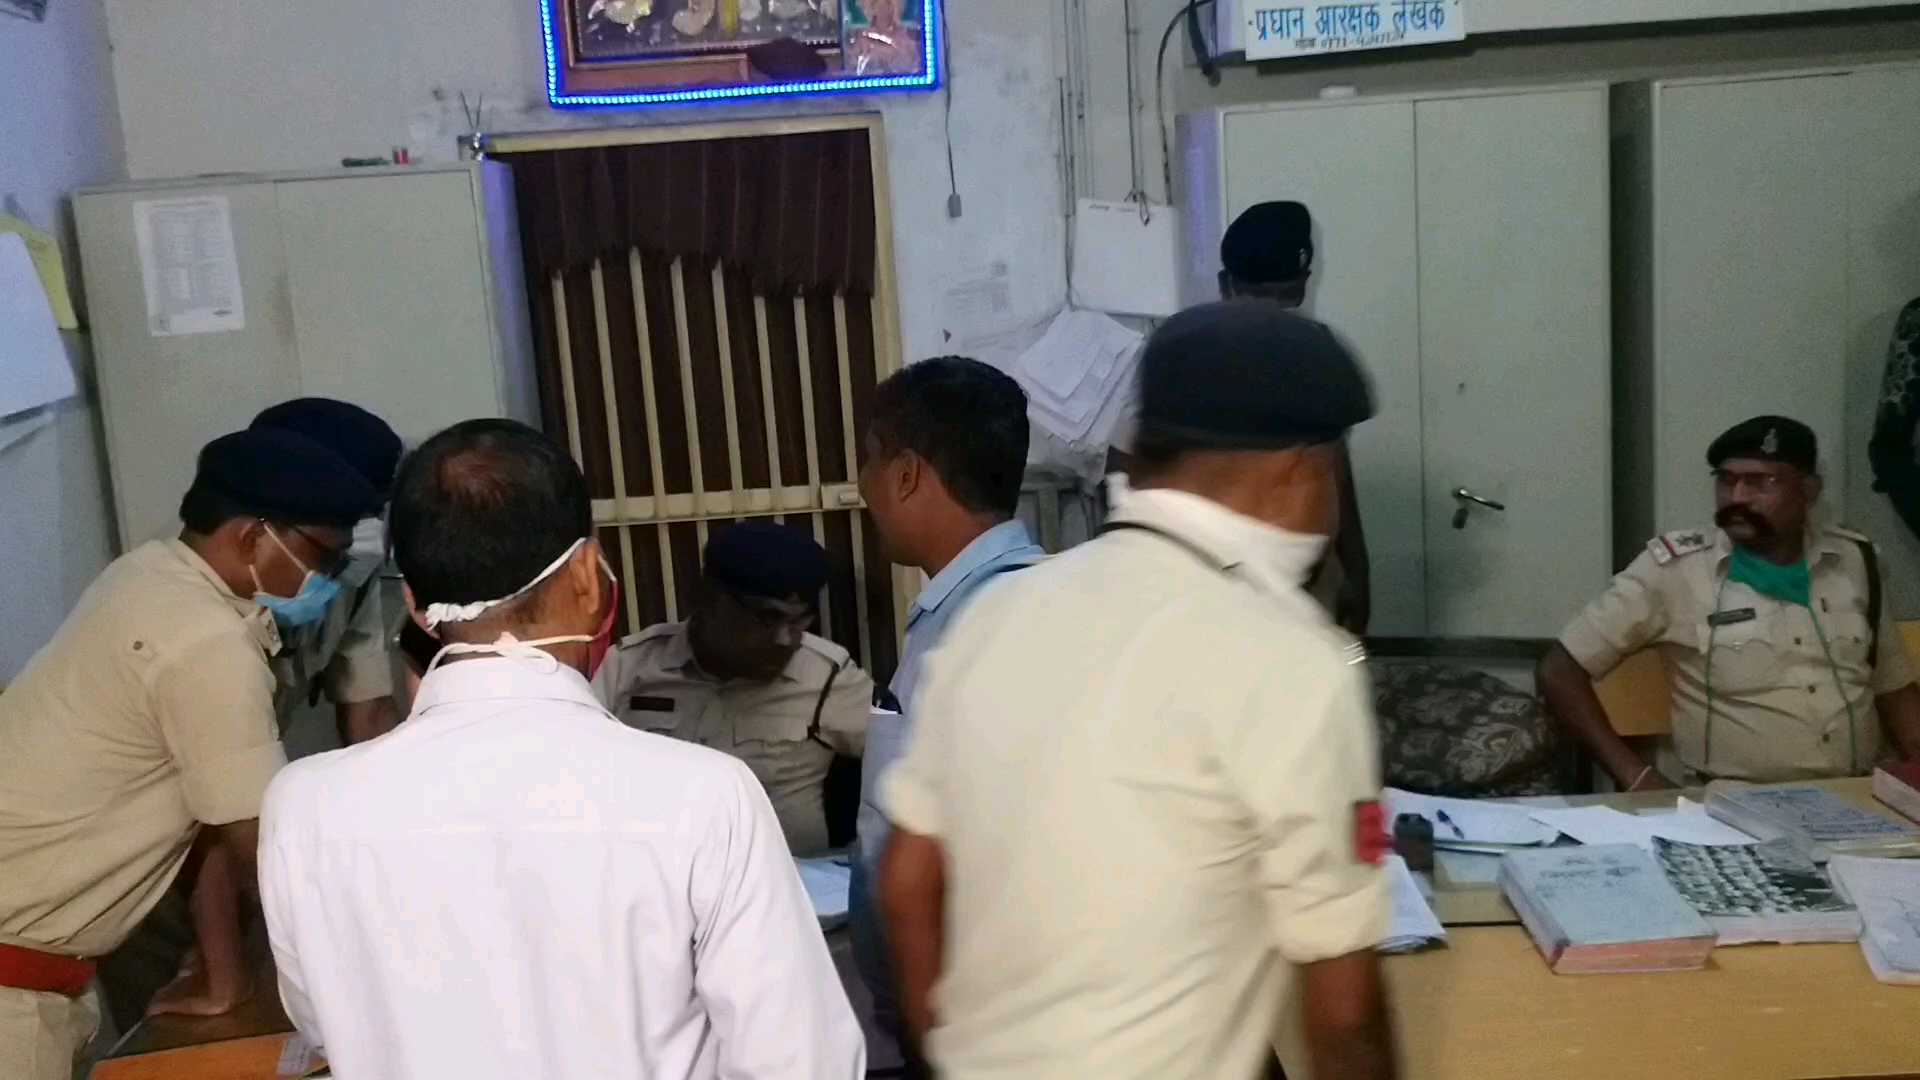 Accused of murder hanged in raipur police station bathroom